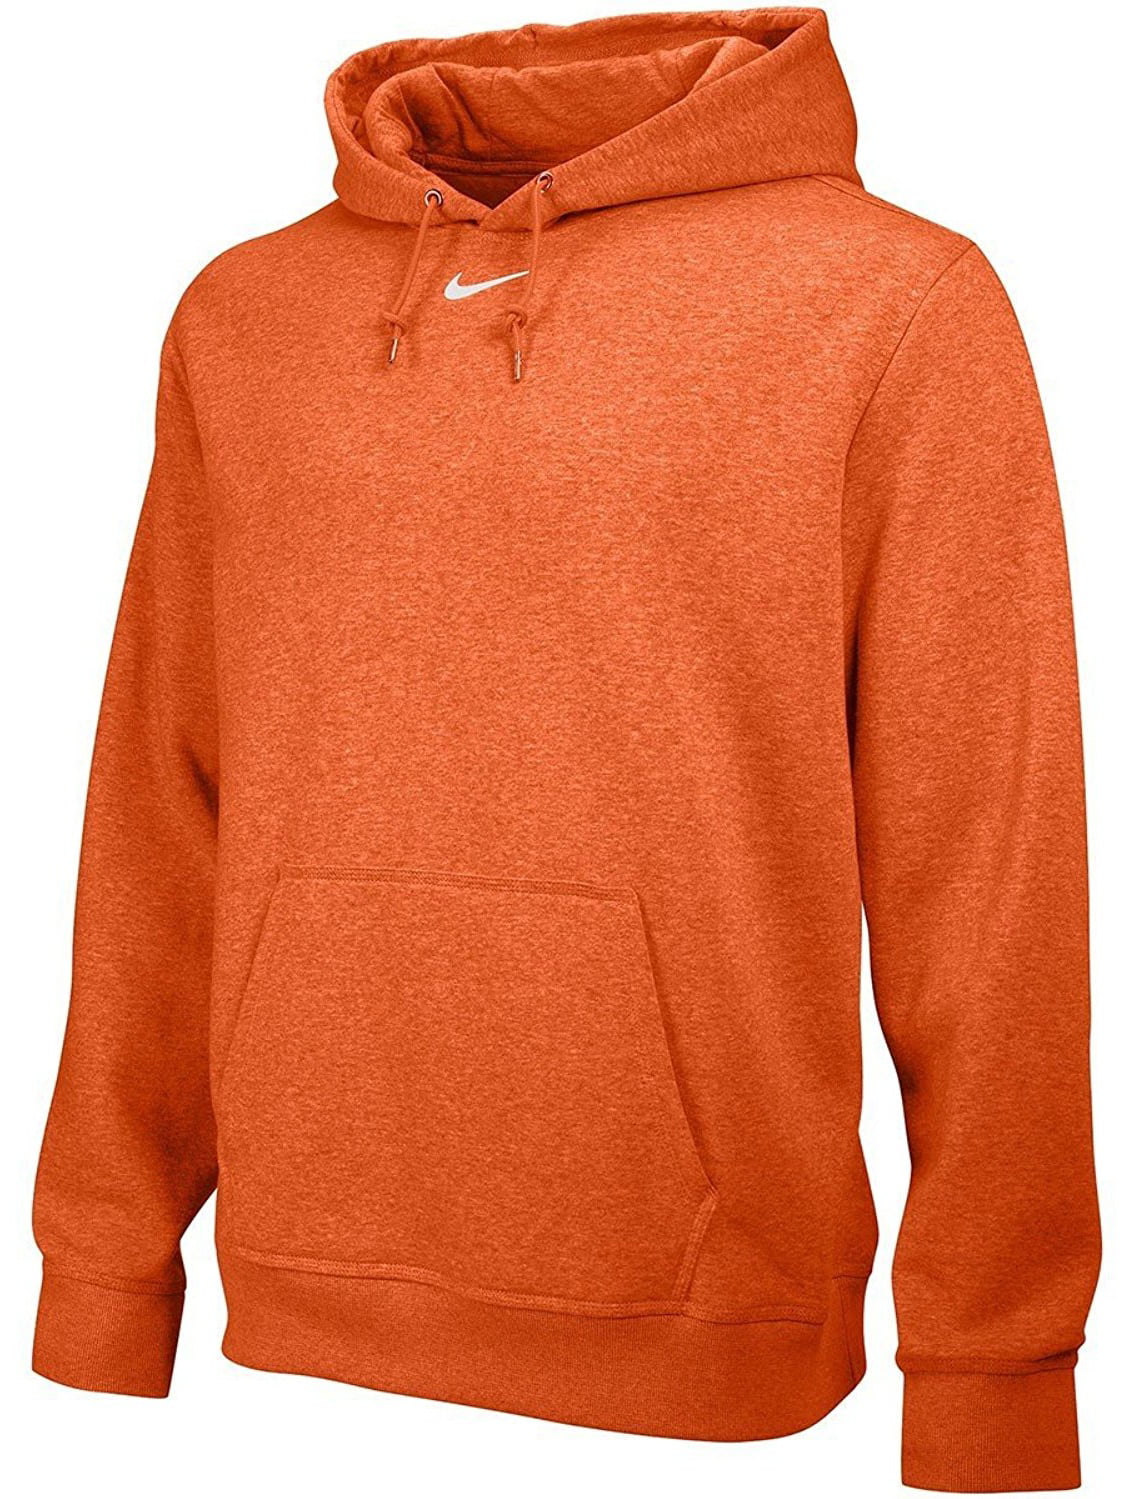 orange hoodies